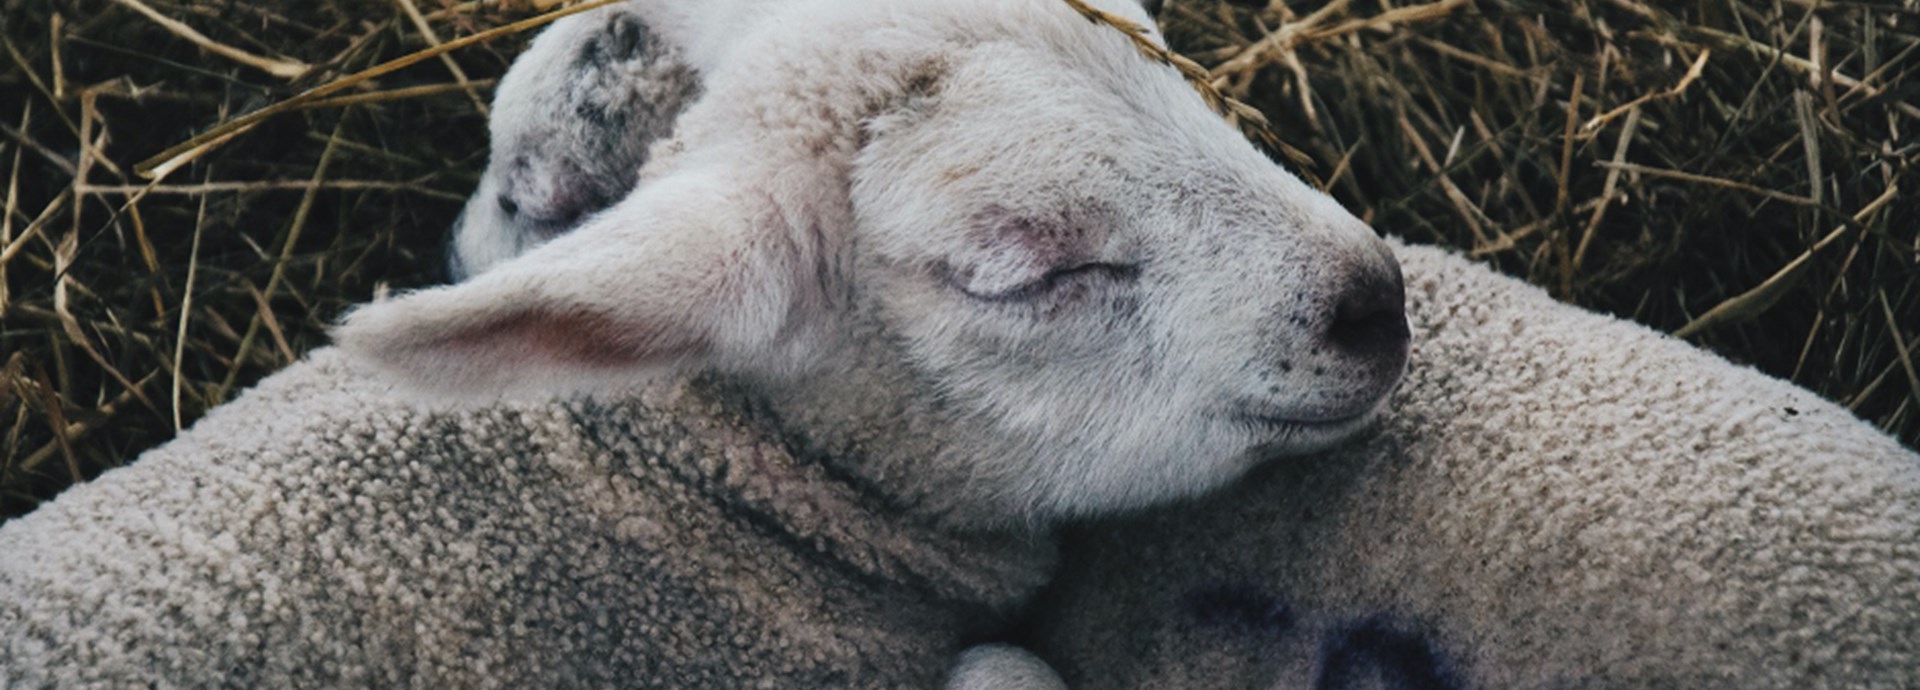 two baby lambs sleeping